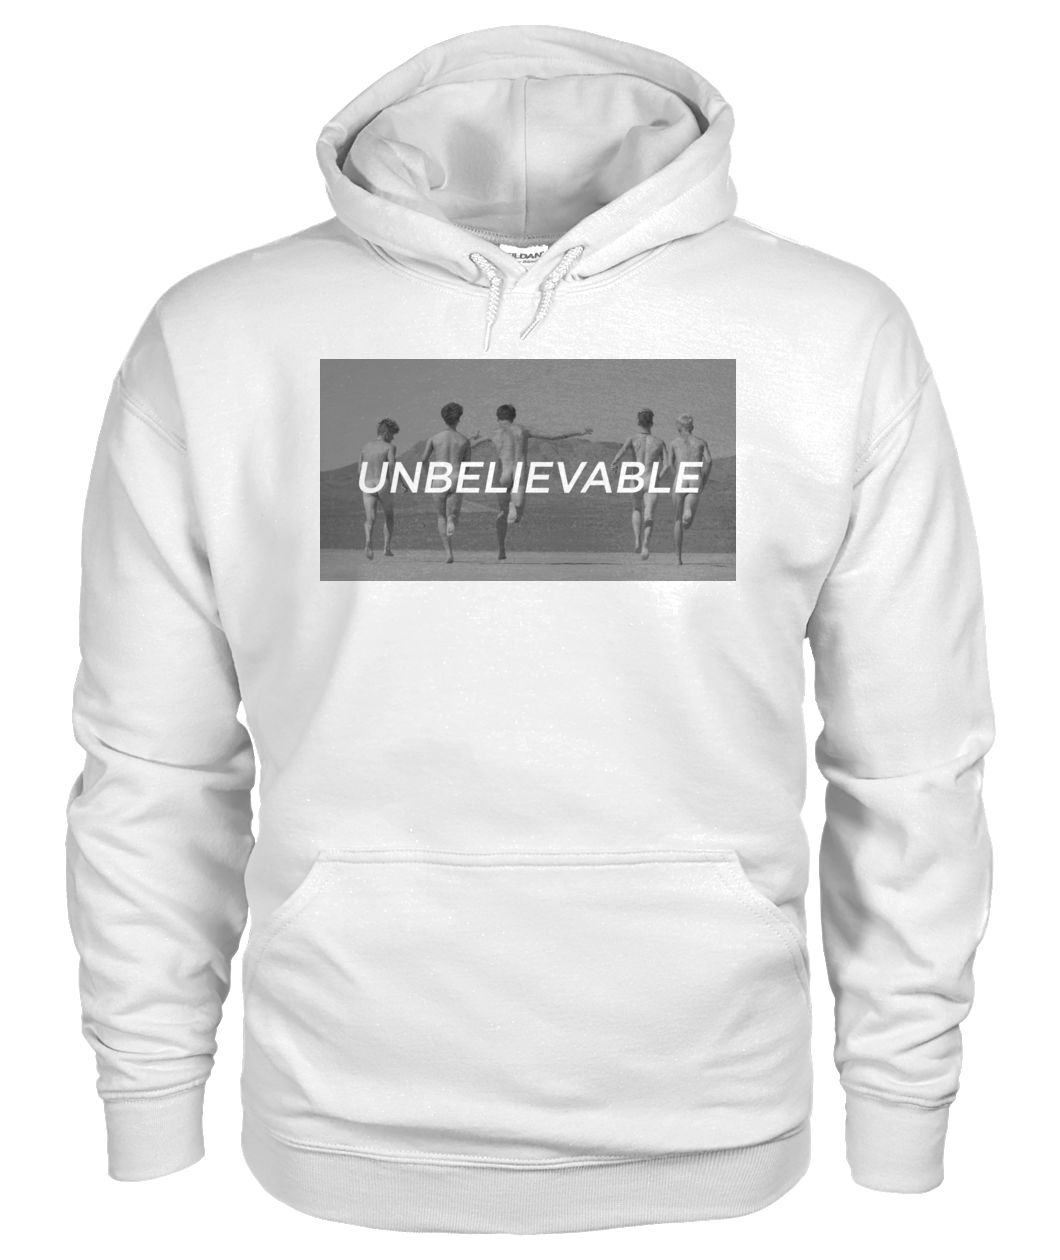 Why don't we unbelievable gildan hoodie